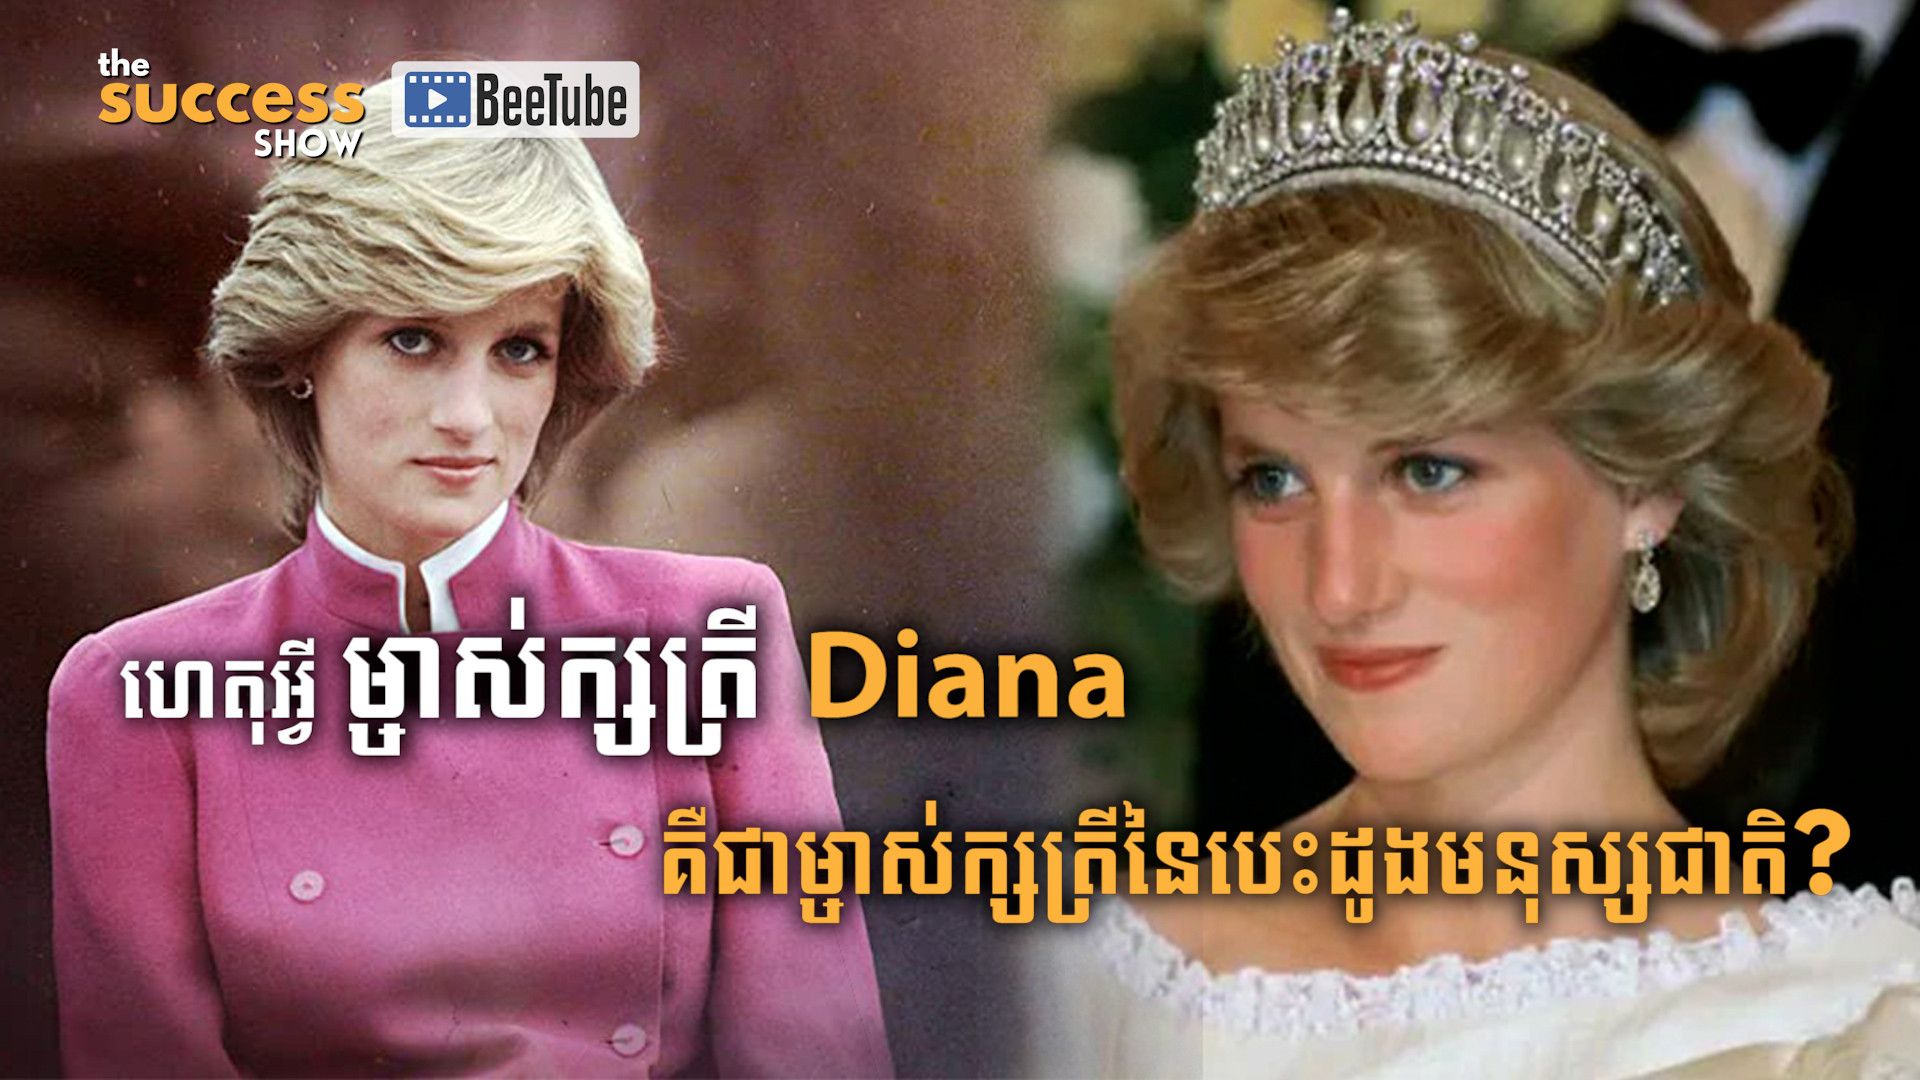 ហេតុអ្វីម្ចាស់ក្សត្រី Diana គឺជាម្ចាស់ក្សត្រីនៃបេះដូងមនុស្សជាតិ?